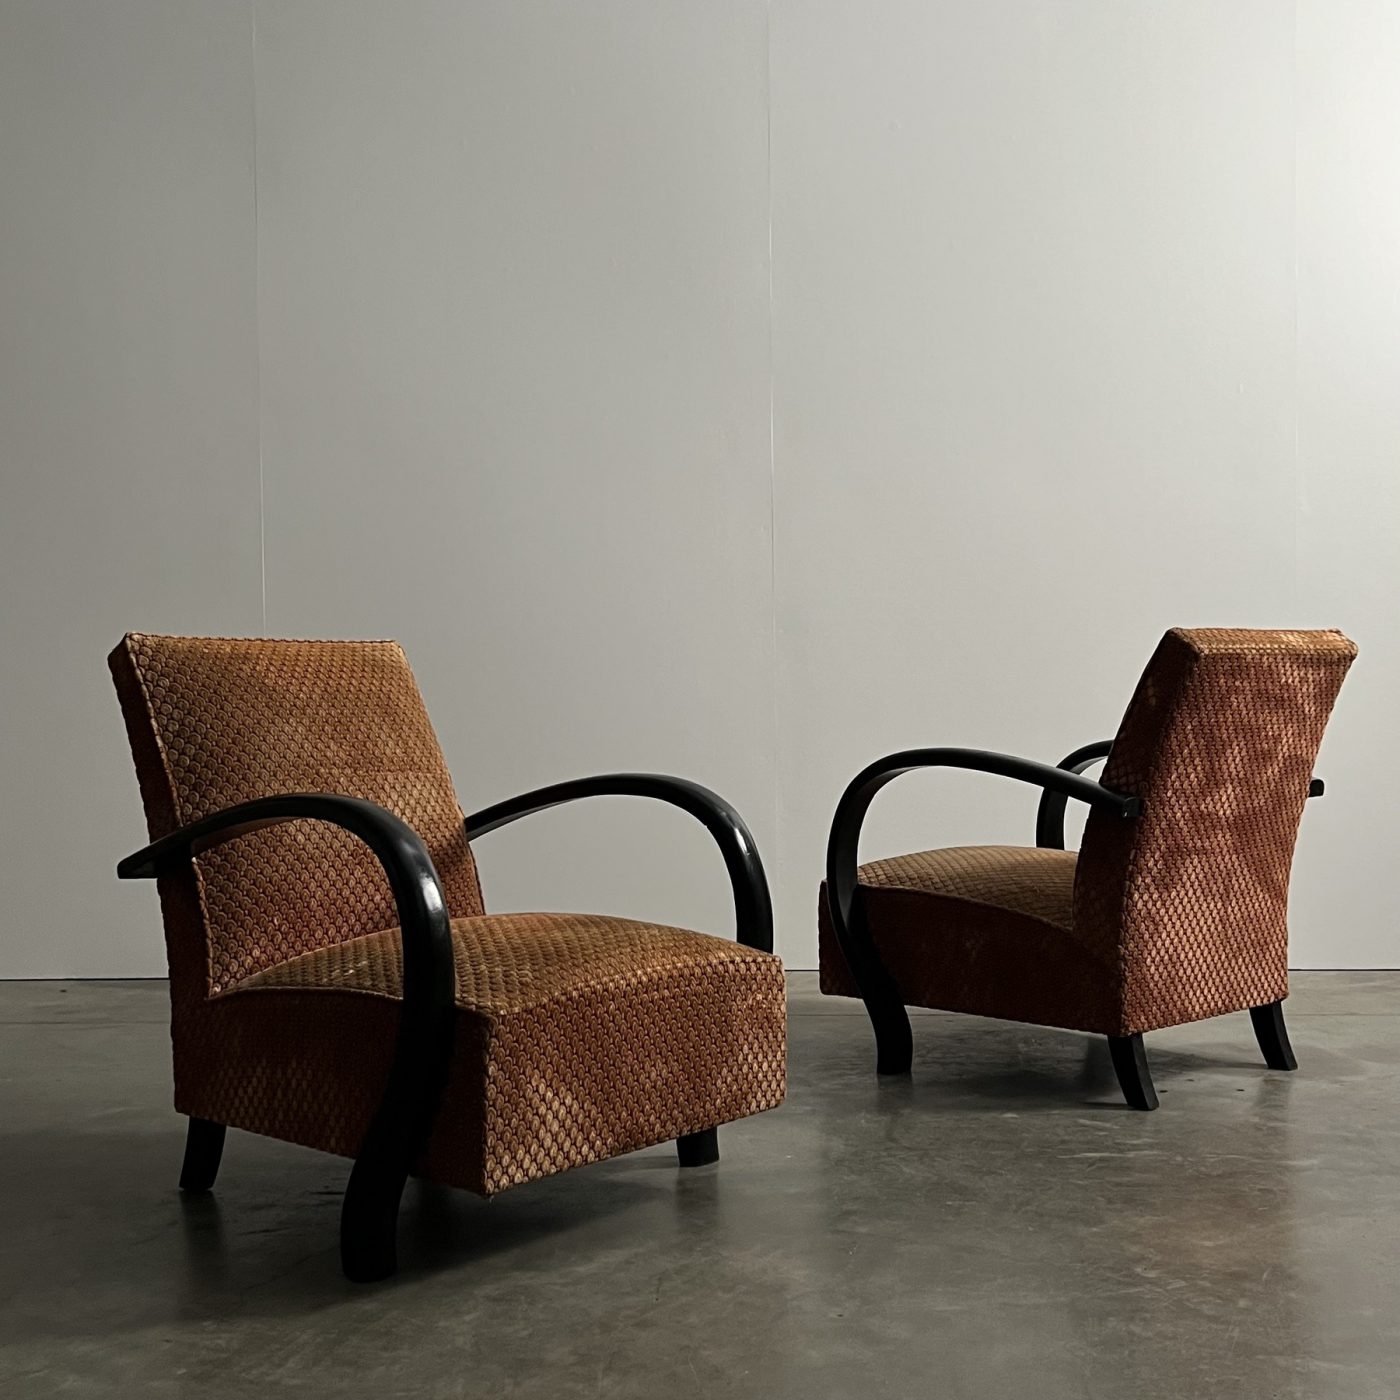 objet-vagabond-artdeco-armchairs0008